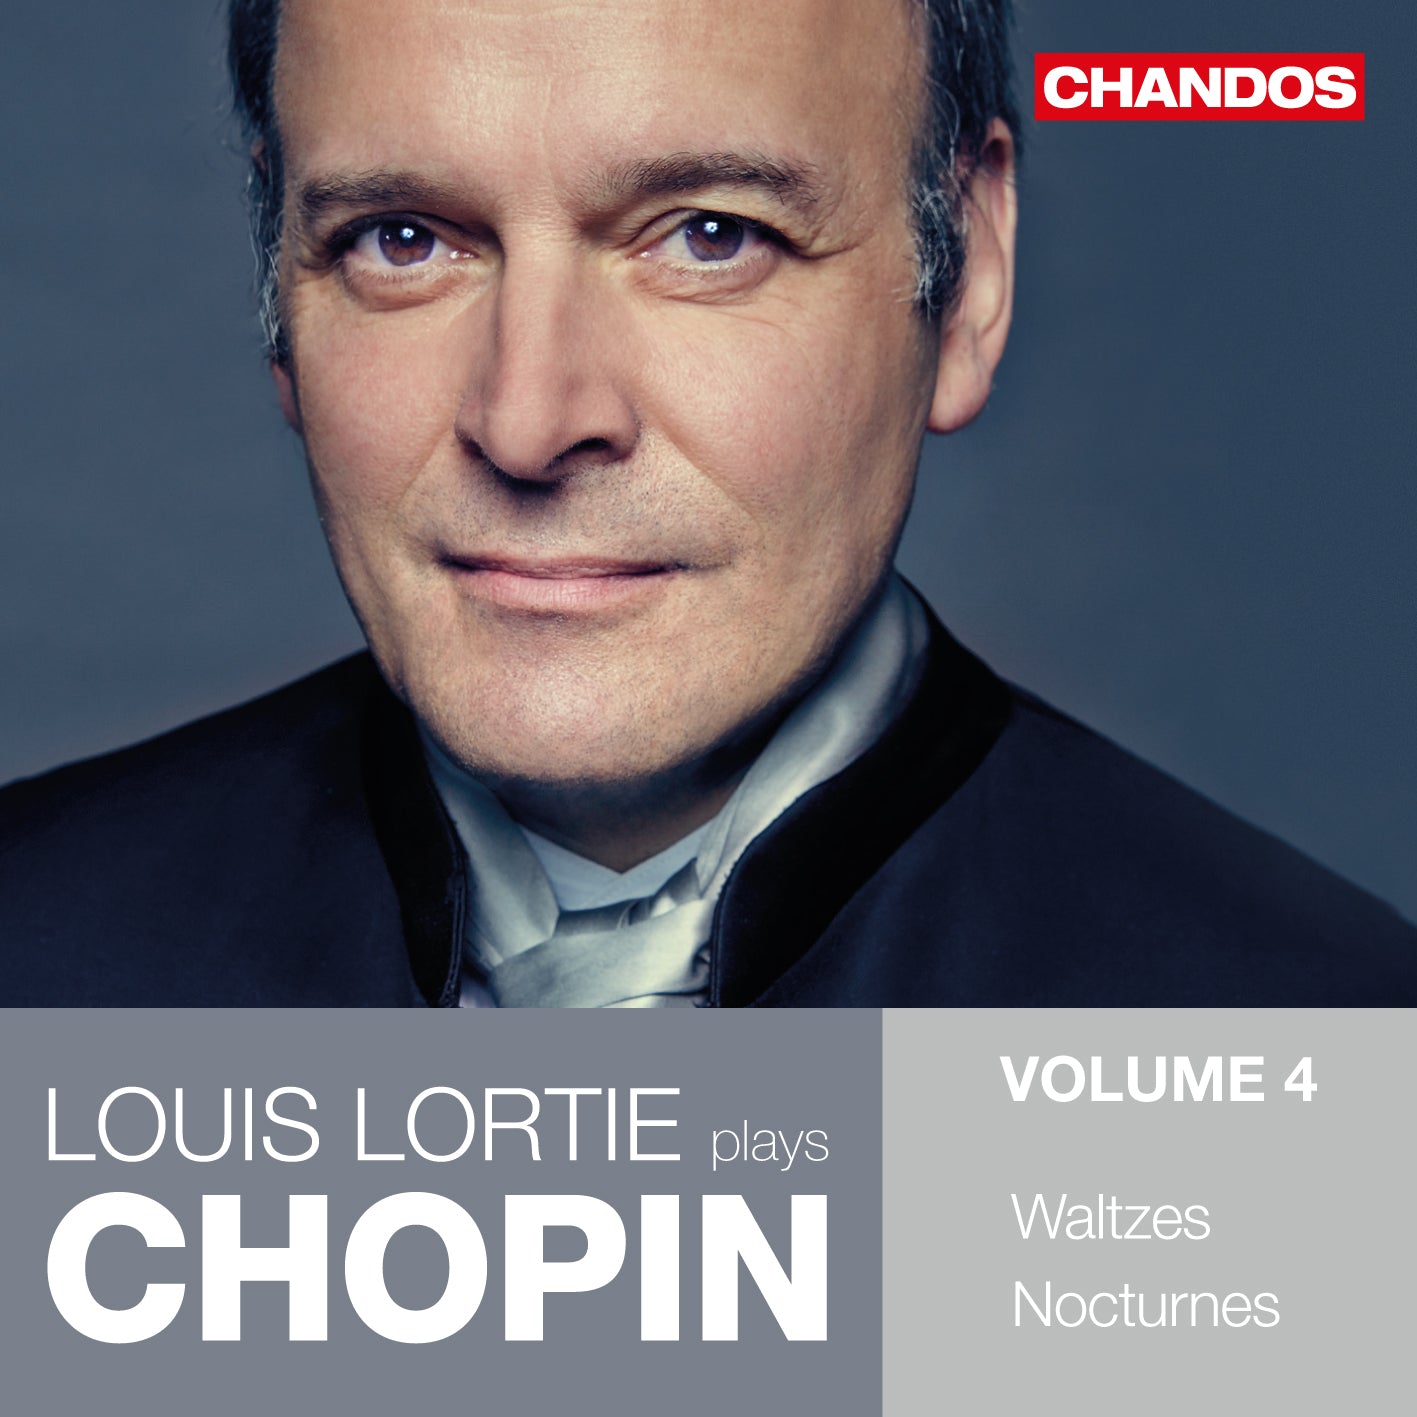 Louis Lortie plays Chopin Vol. 4: Waltzes & Nocturnes